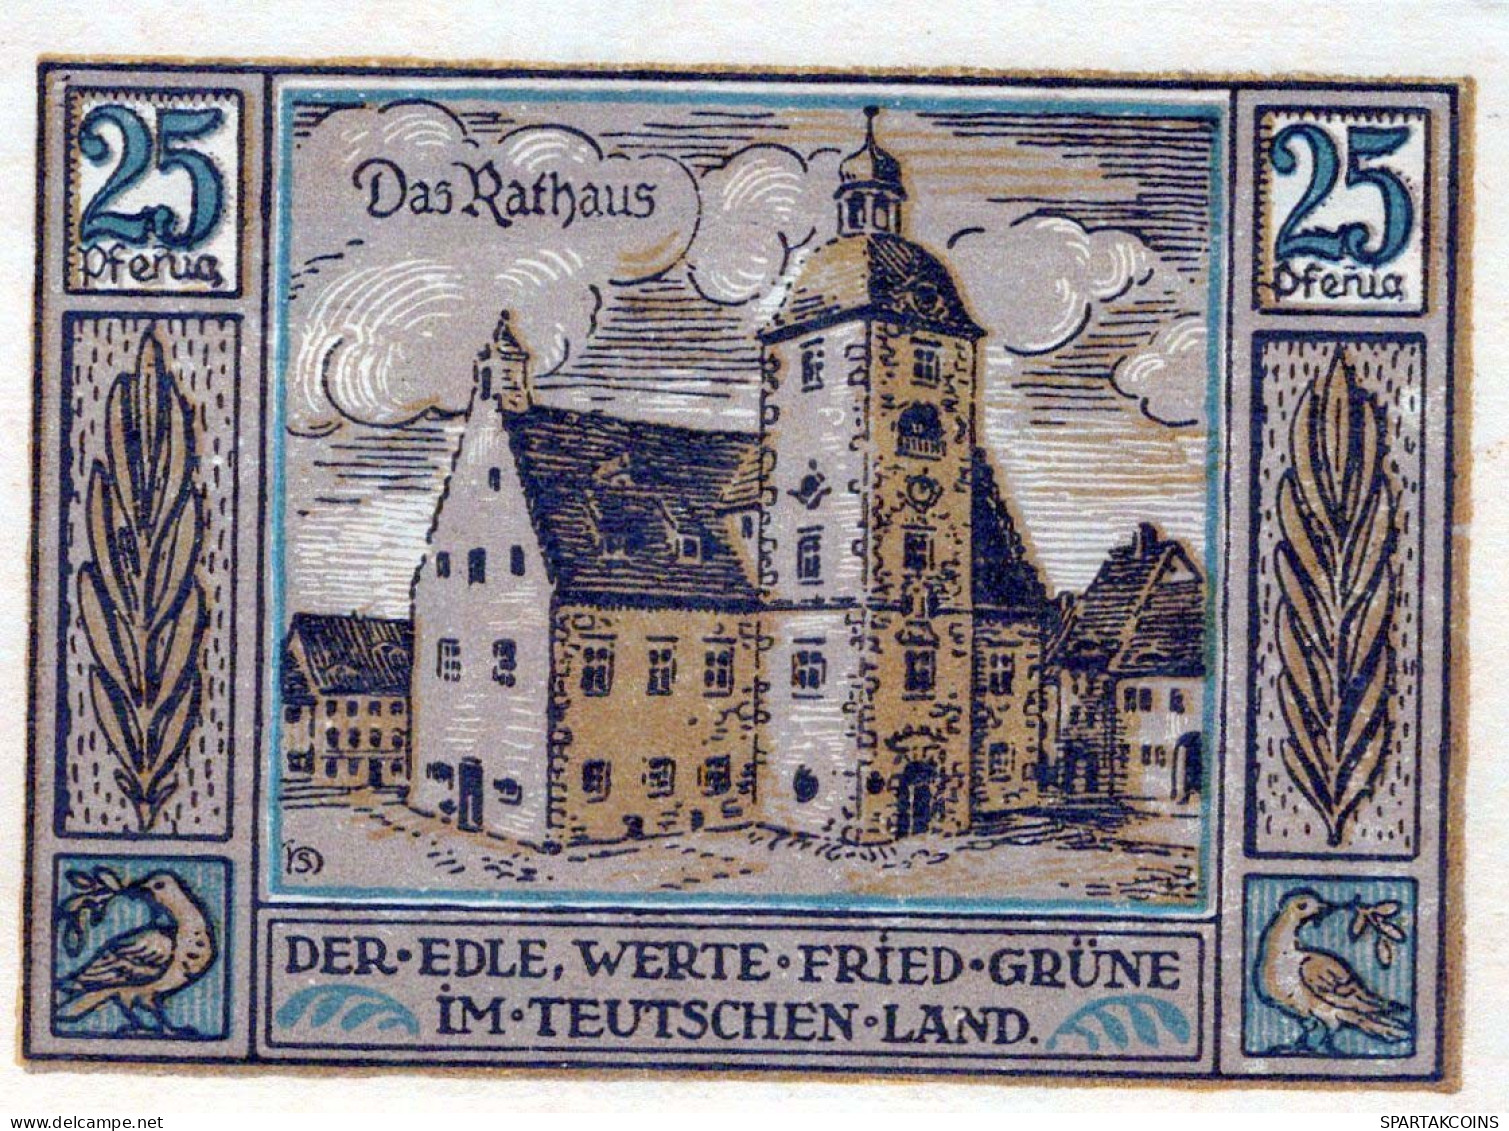 25 PFENNIG 1921 Stadt QUERFURT Saxony UNC DEUTSCHLAND Notgeld Banknote #PB850 - [11] Emissions Locales